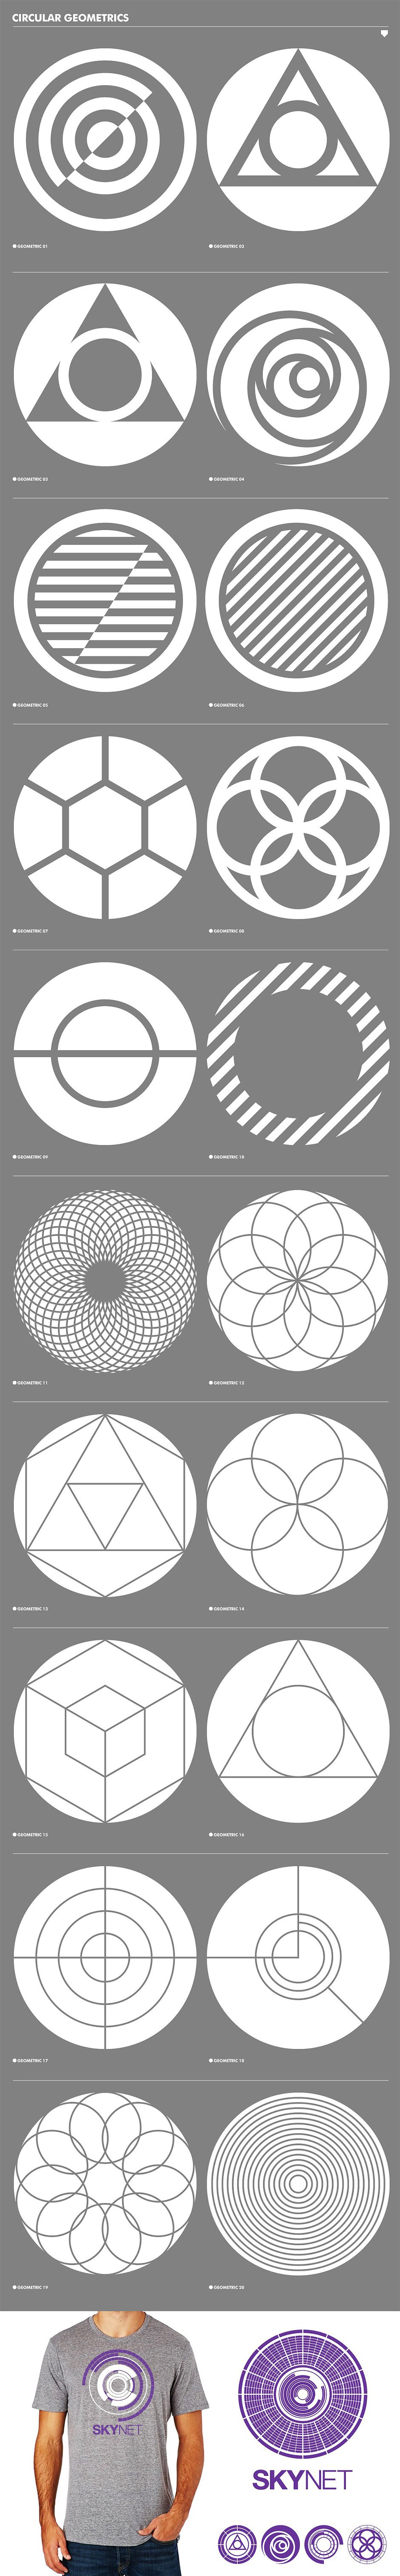 circular vectors